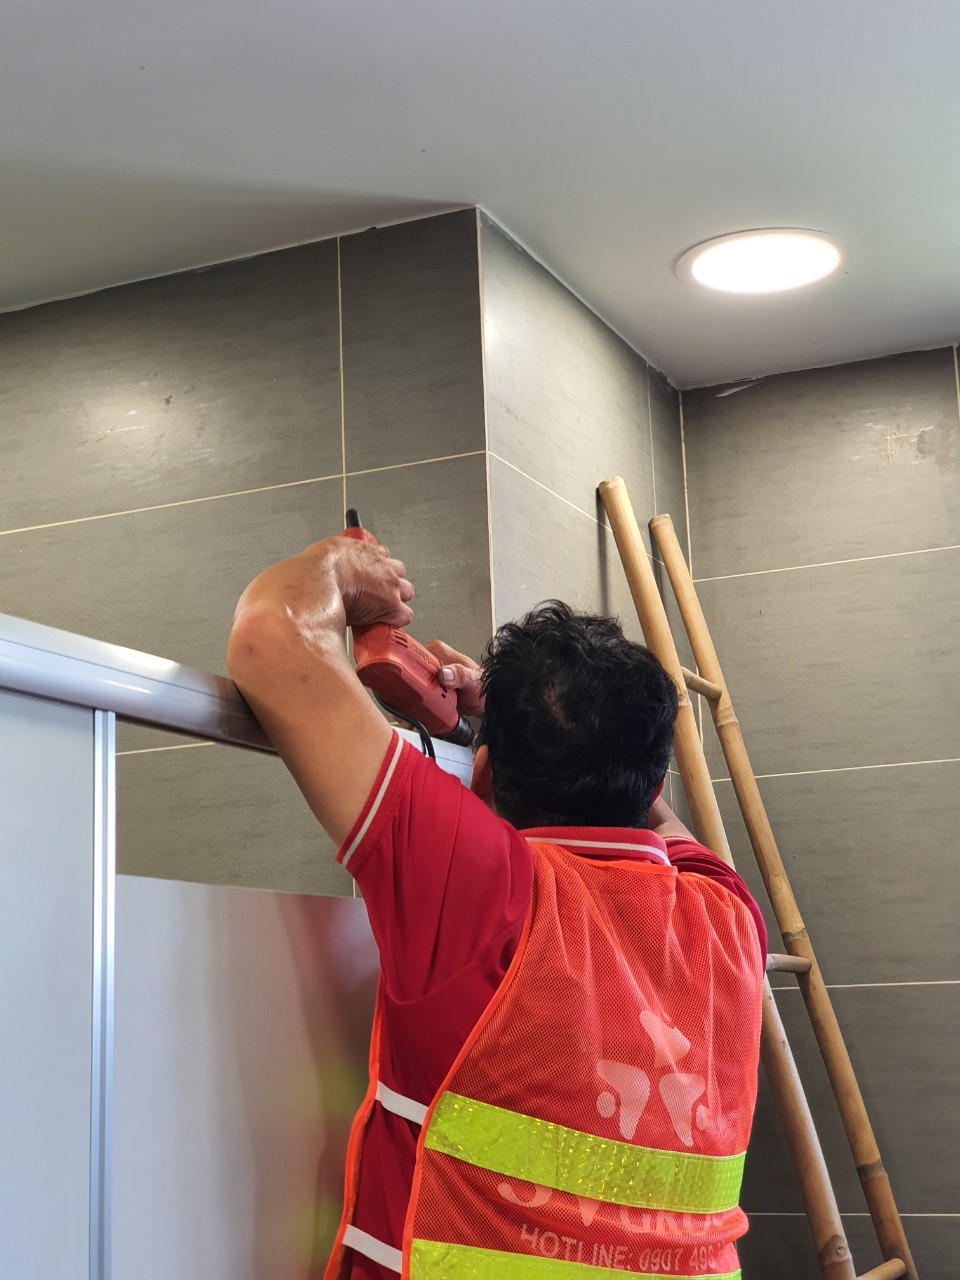 Vách ngăn toilet là một trong những ứng dụng phổ biến của các dự án thiết kế nội thất. Mang lại không gian riêng tư và tạo điểm nhấn cho phòng vệ sinh. Chọn từ những mẫu vách ngăn toilet cao cấp và hiệu quả để nâng cao giá trị cho không gian của bạn.